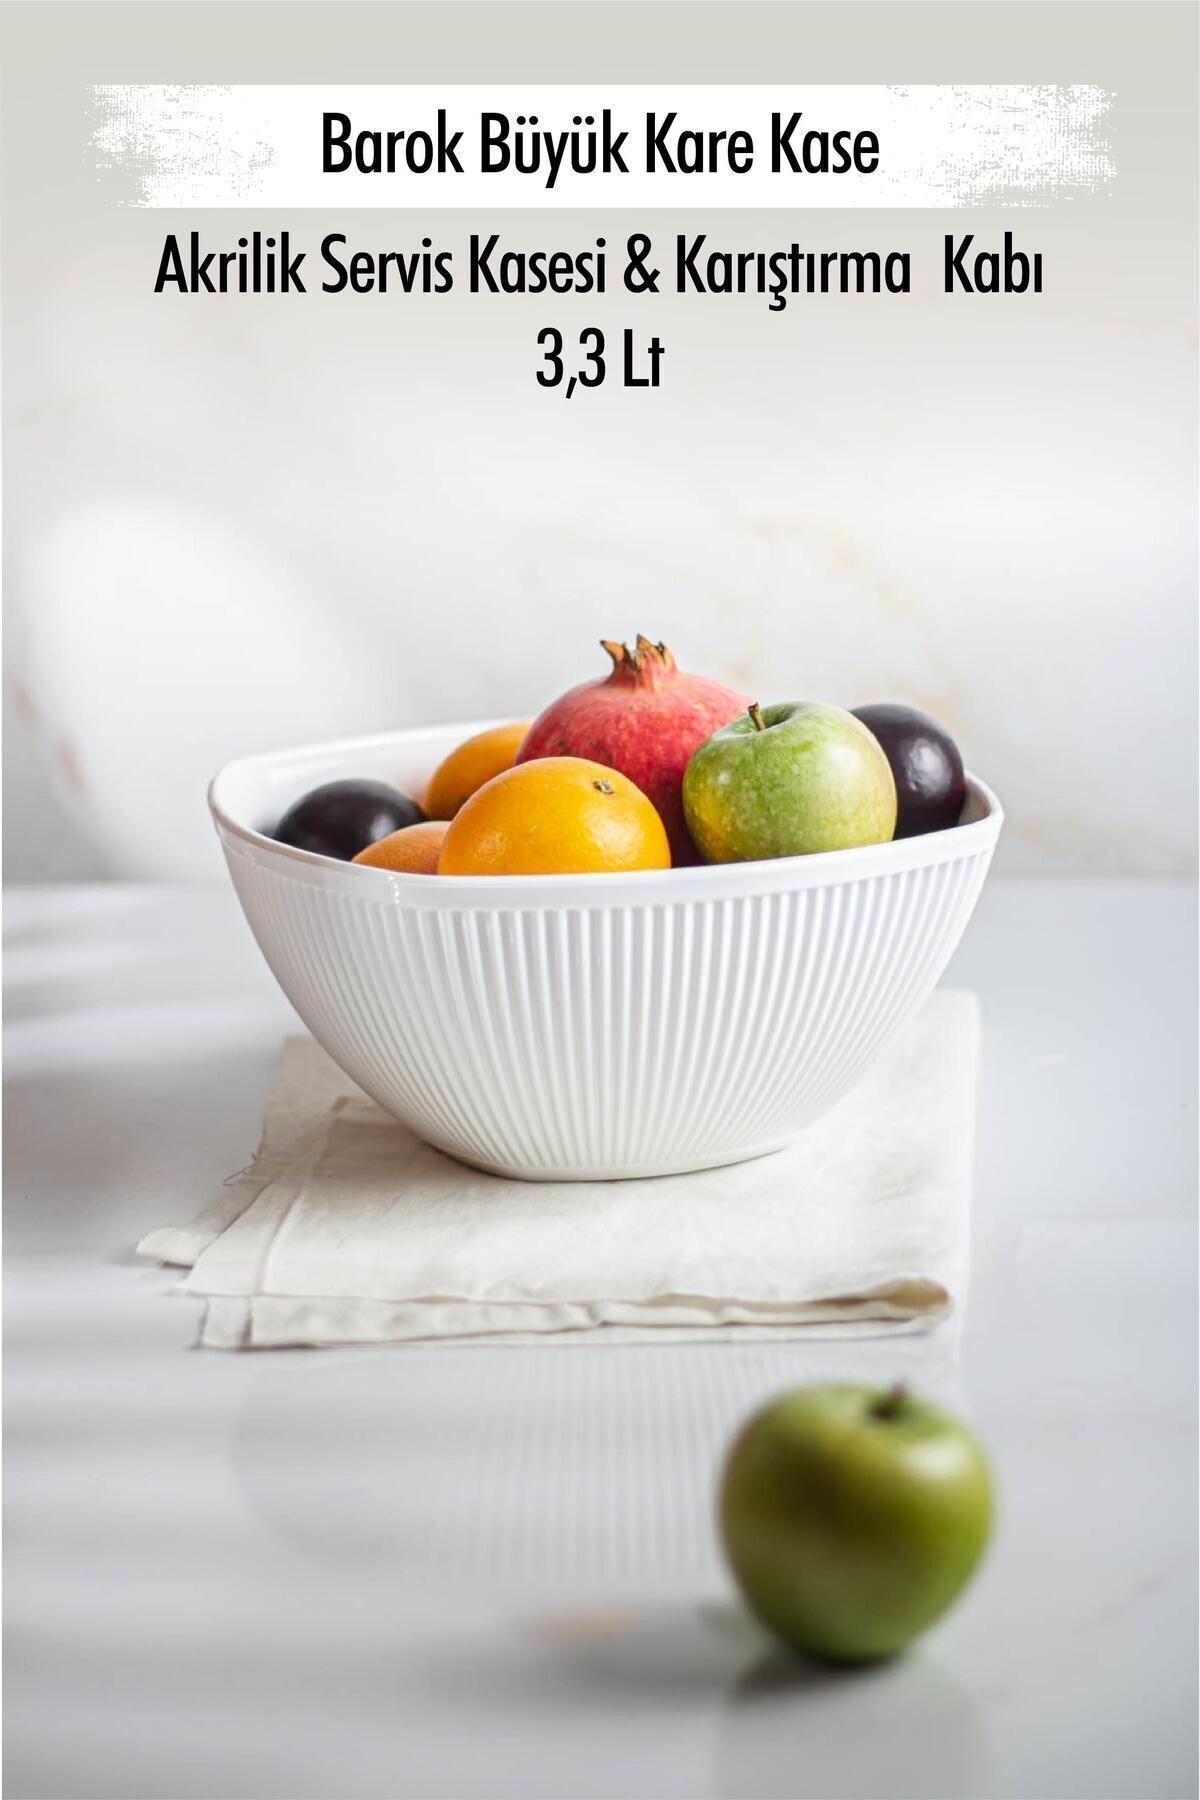 EWs Akrilik Barok Beyaz Büyük Kare Meyve & Salata Kasesi & Karıştırma Kabı / 3,3 Lt  (CAM DEĞİLDİR)